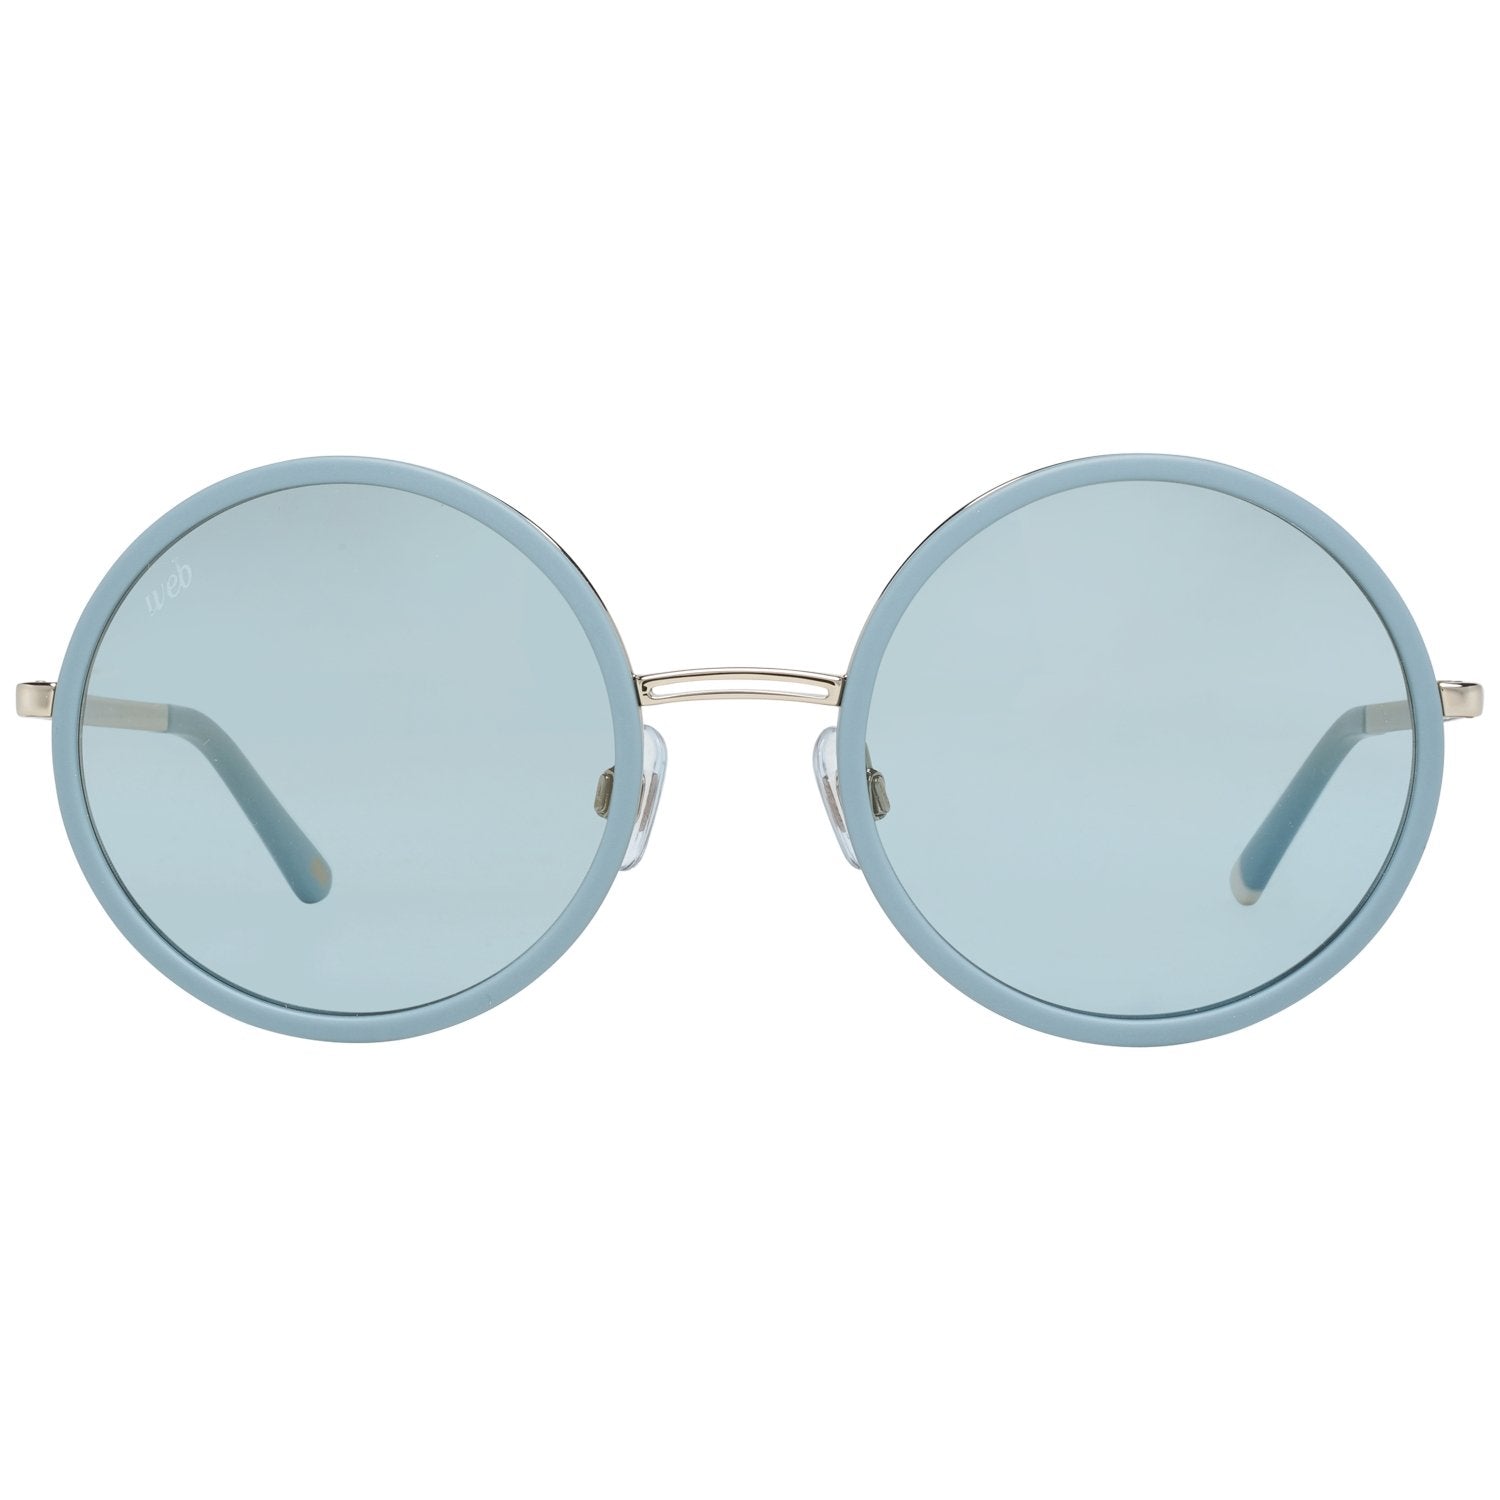 Web Blue Sunglasses for Woman - Fizigo